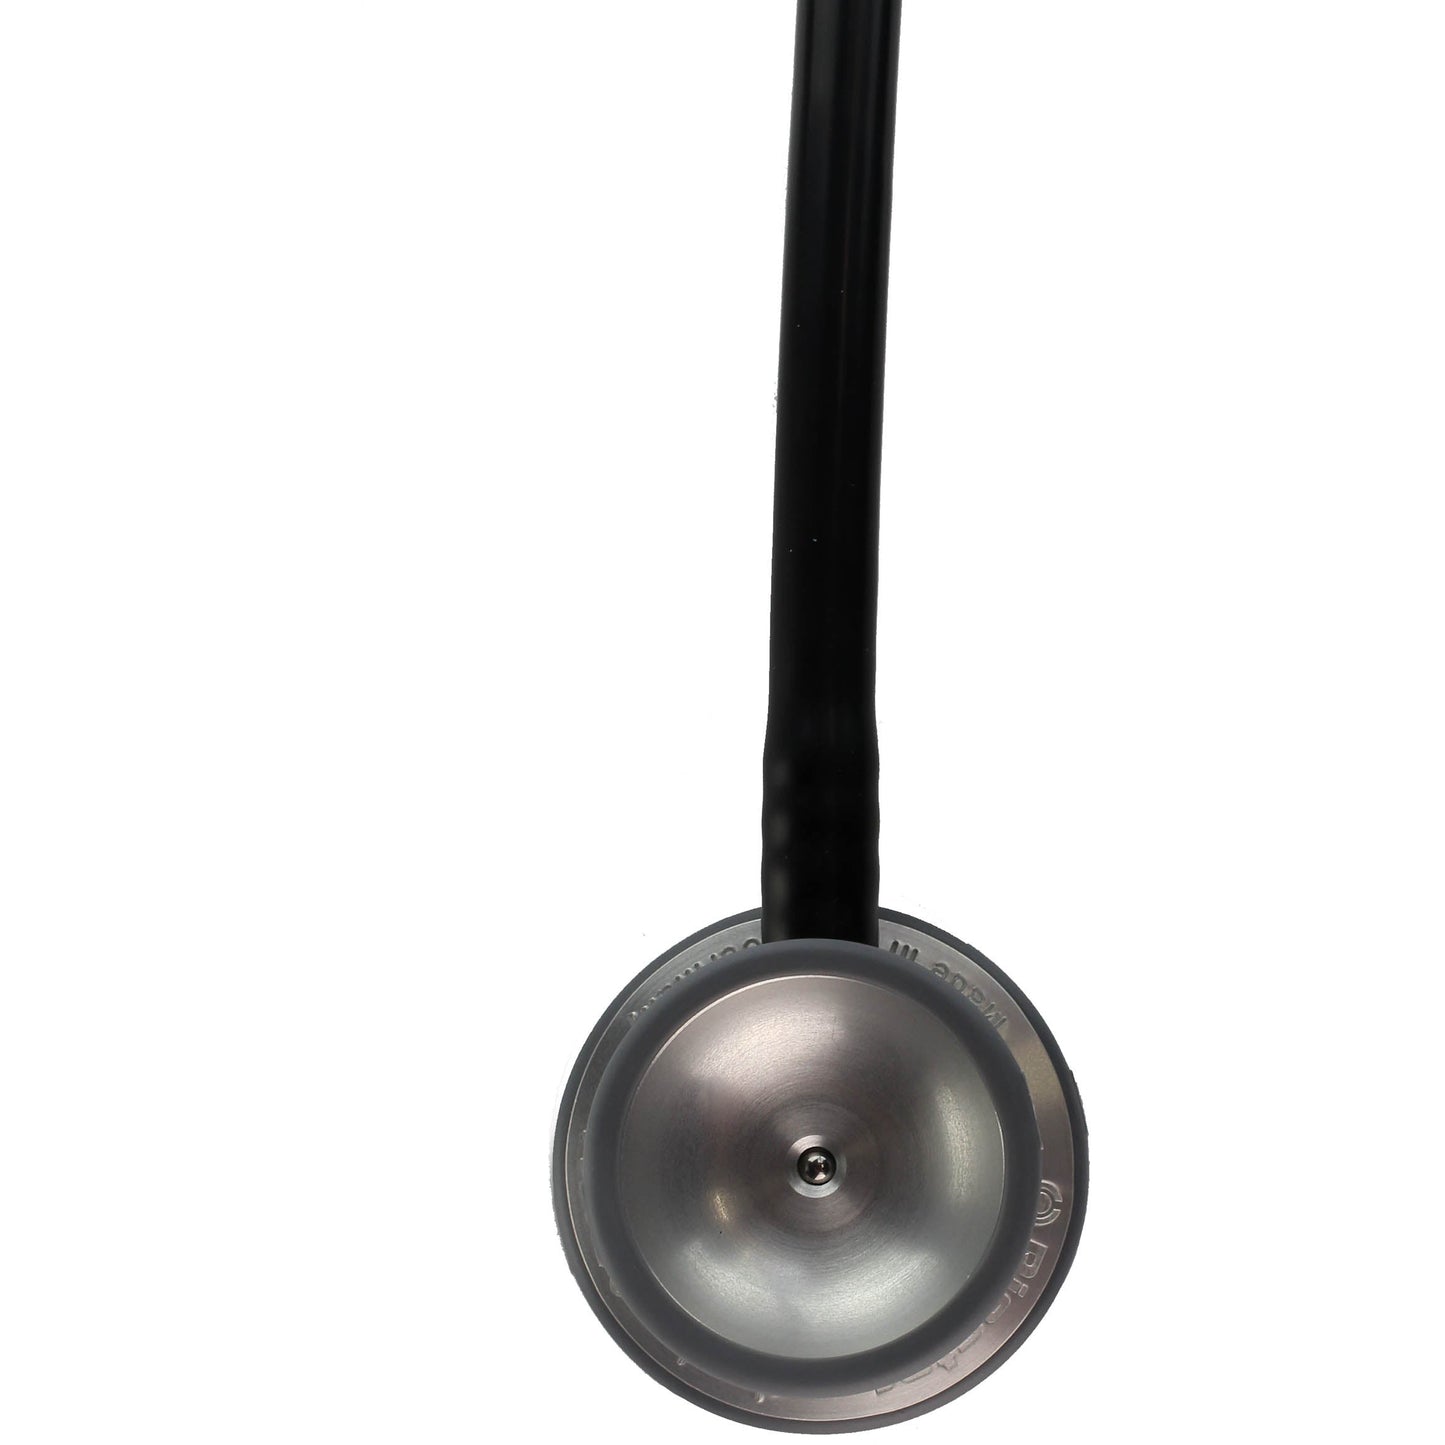 Riester Duplex Aluminium Stethoscope - Black